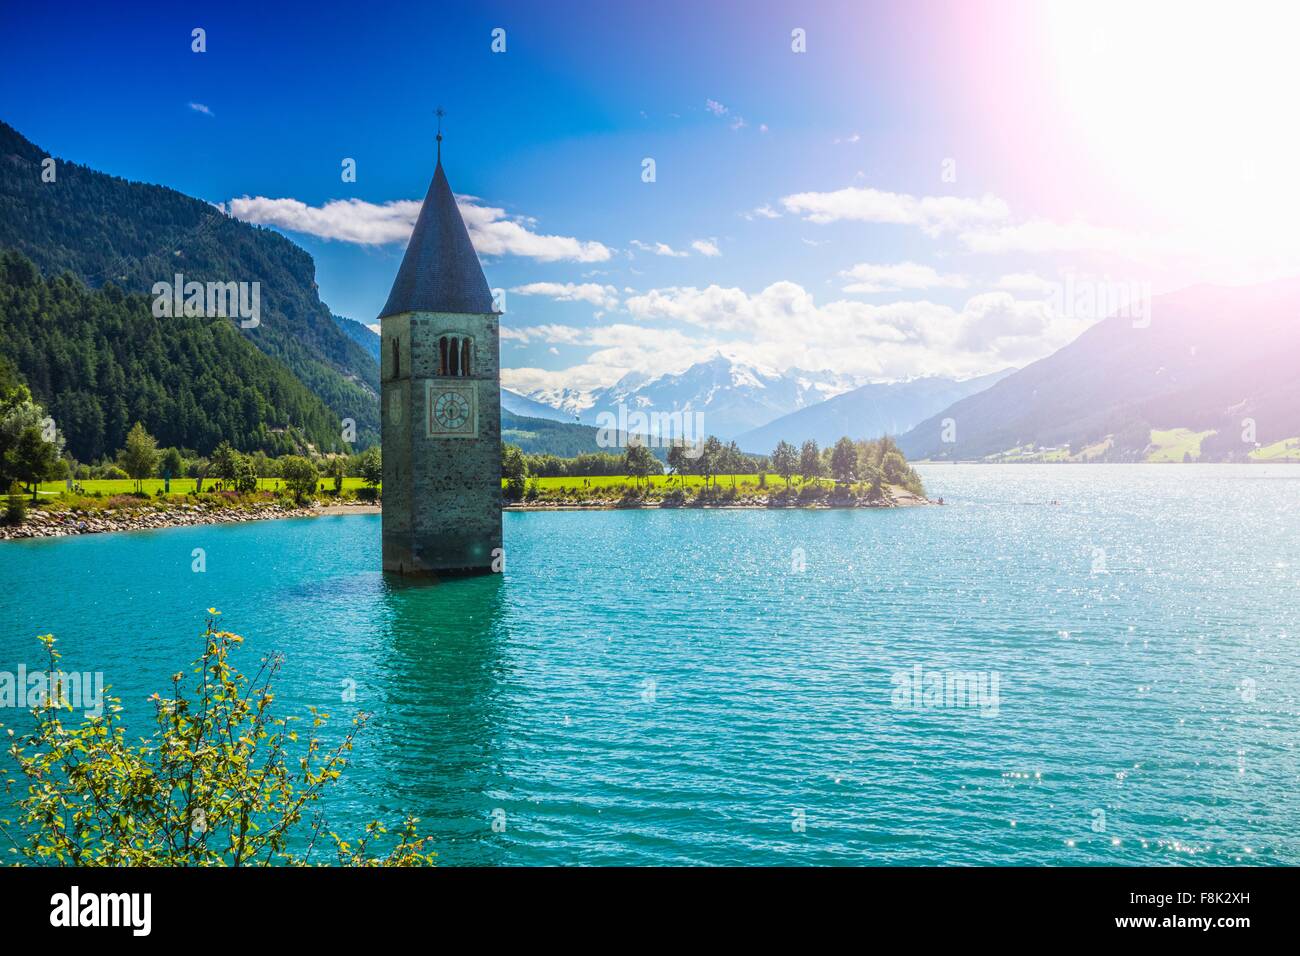 Flèche d'église baignée dans le lac, Trentin-Haut-Adige, Italie Banque D'Images